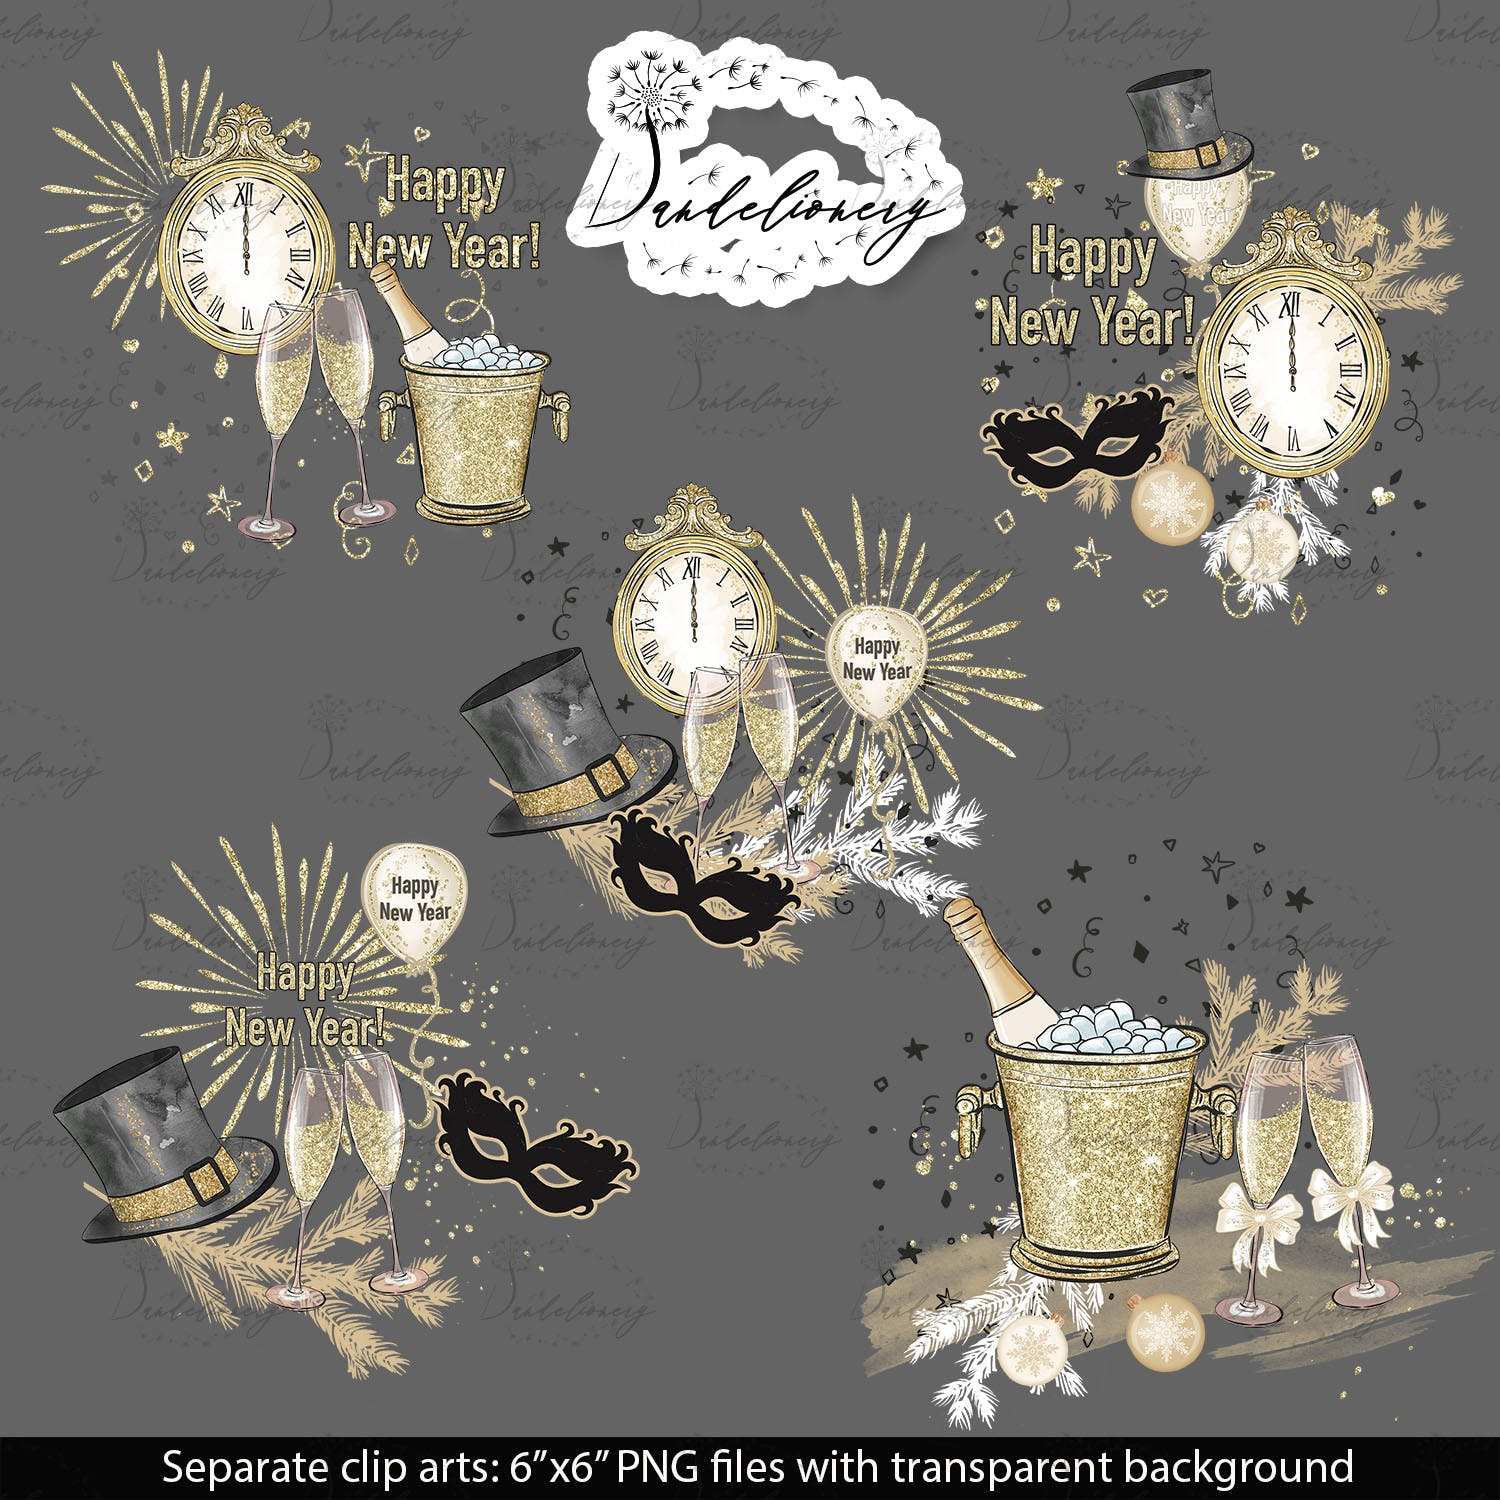 派对时光主题水彩手绘图案16设计网精选设计素材 Party Time design插图(4)